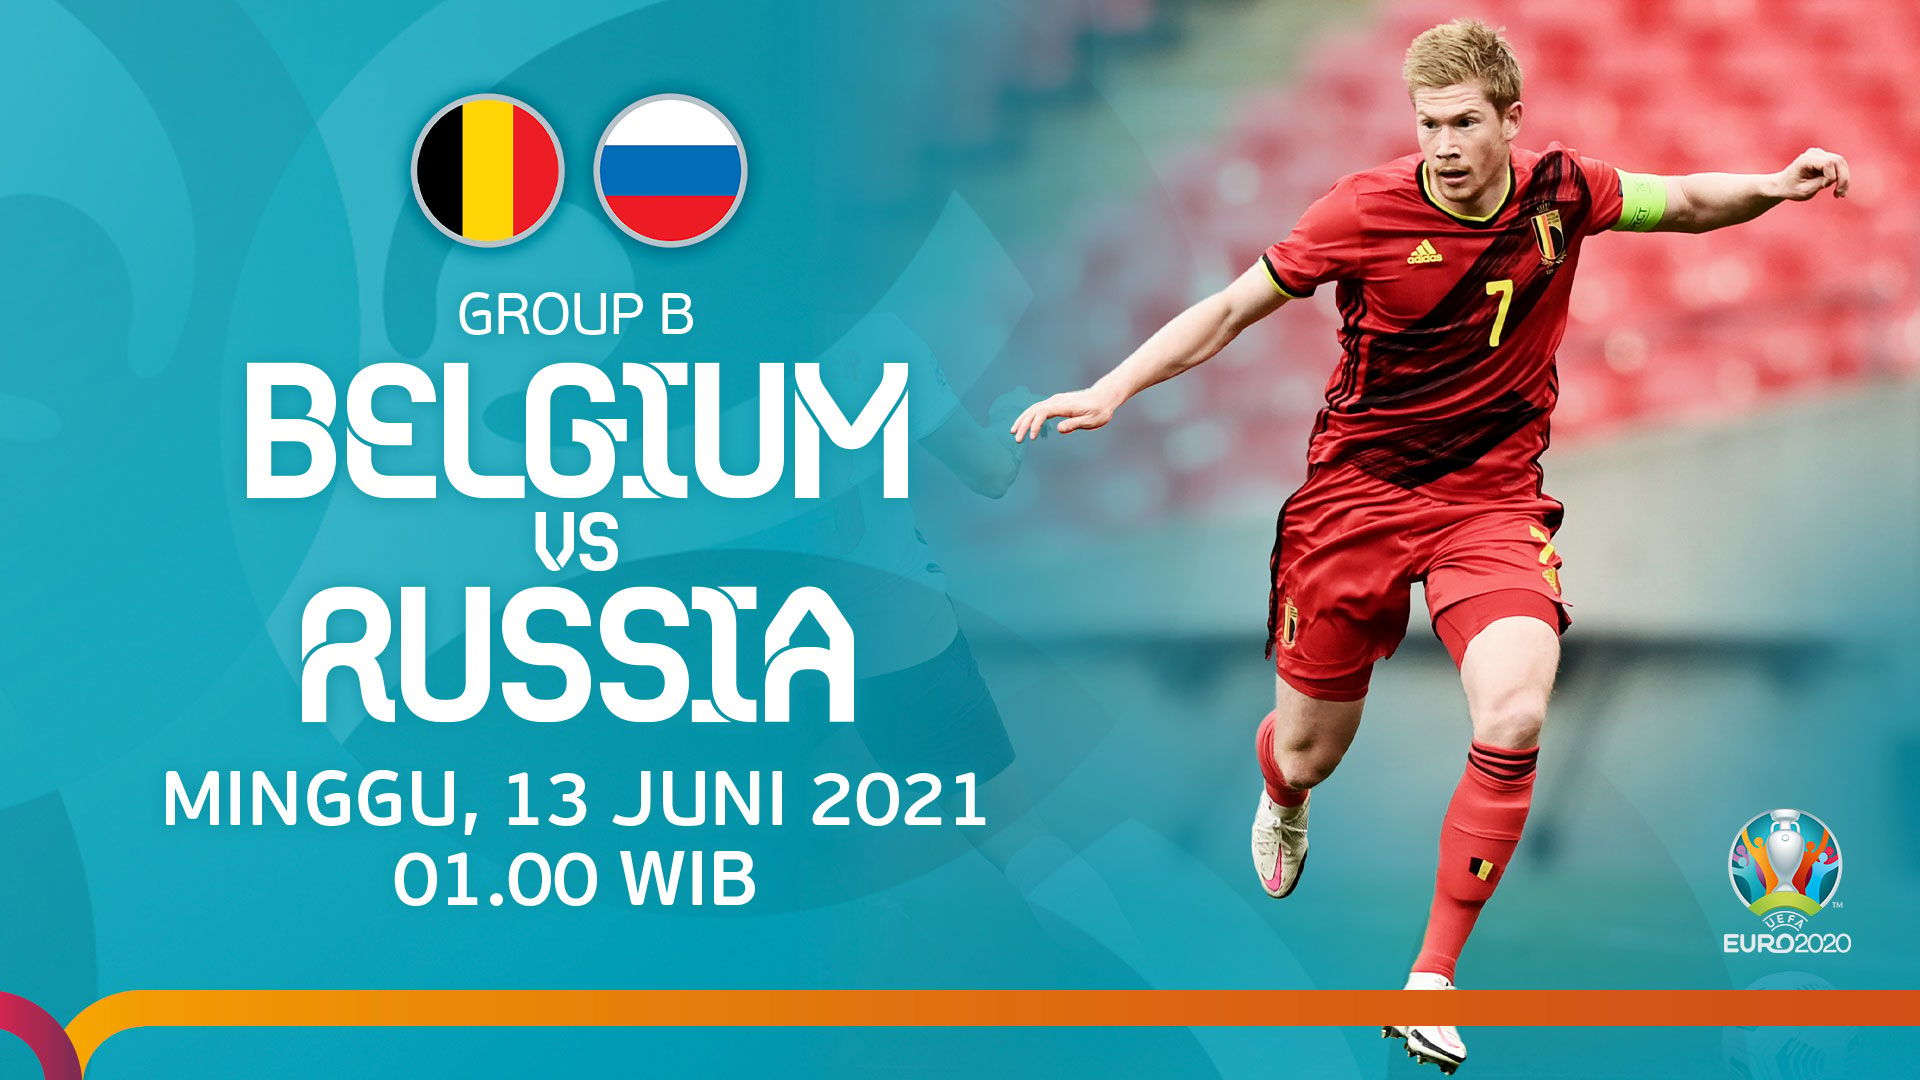 Belgium vs russia